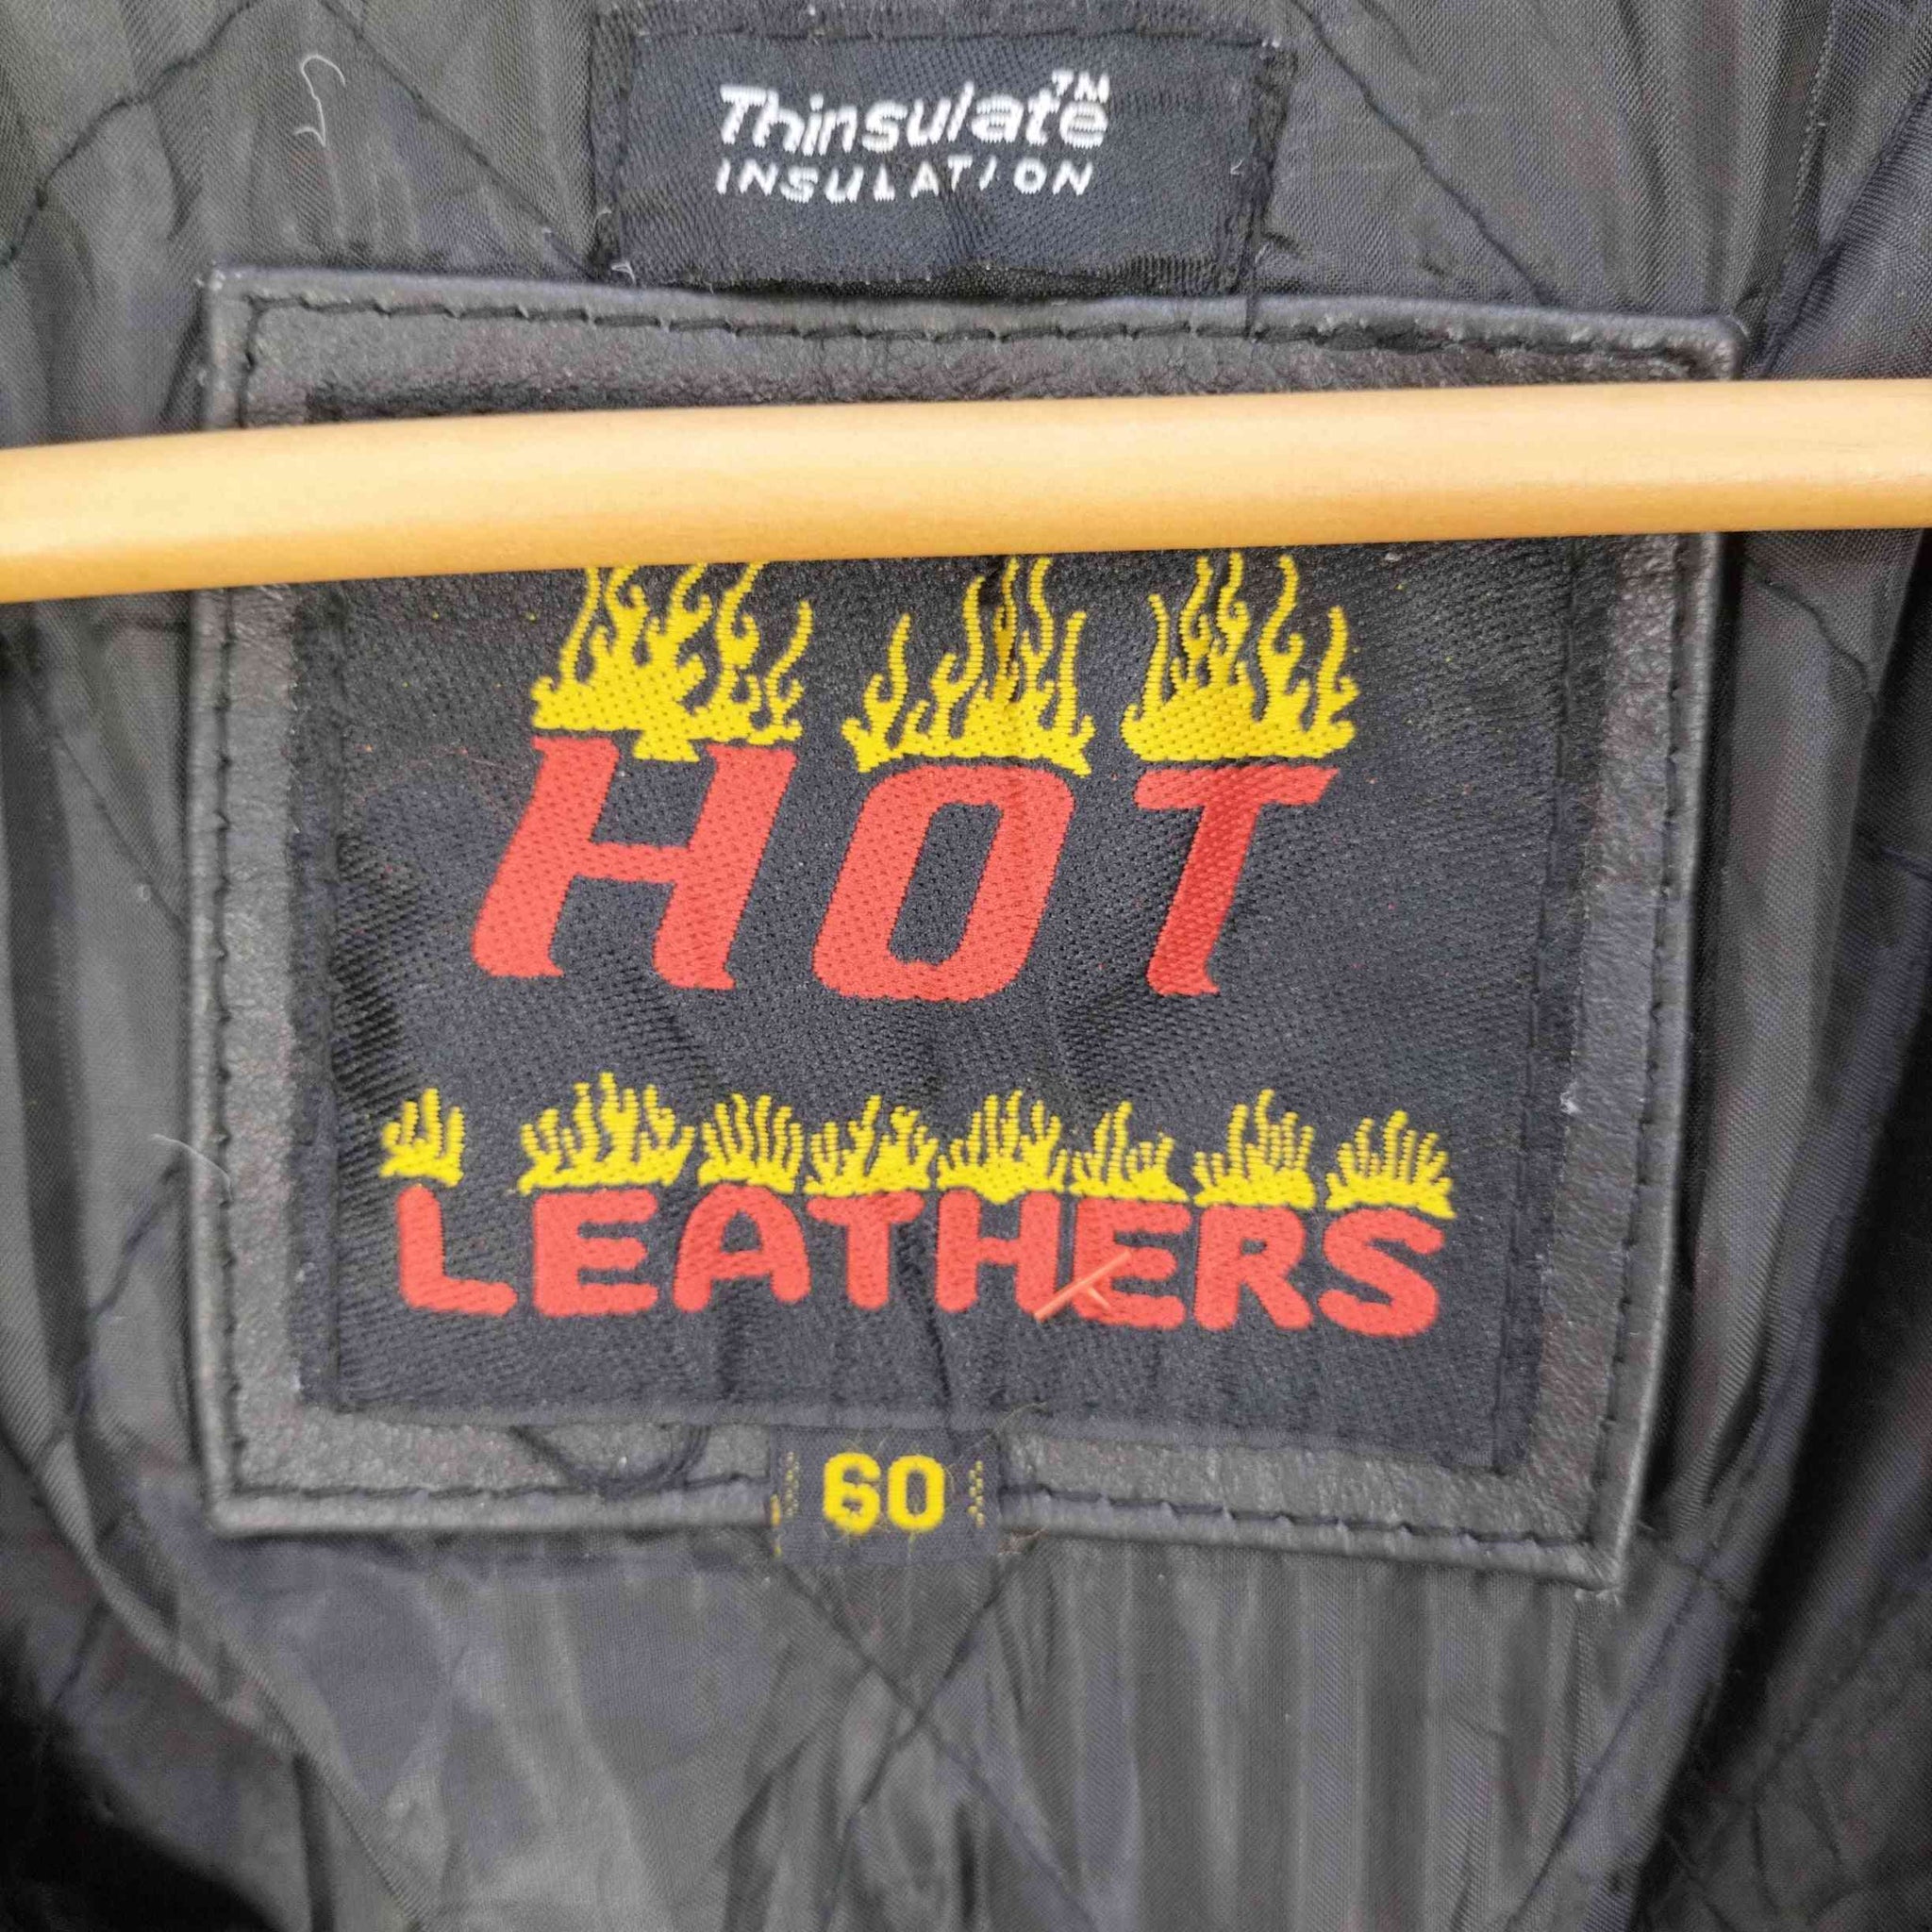 Hot LEATHERS(ホットレザー)Thinsulate INSULATION 本革レザー ダブルライダースジャケット